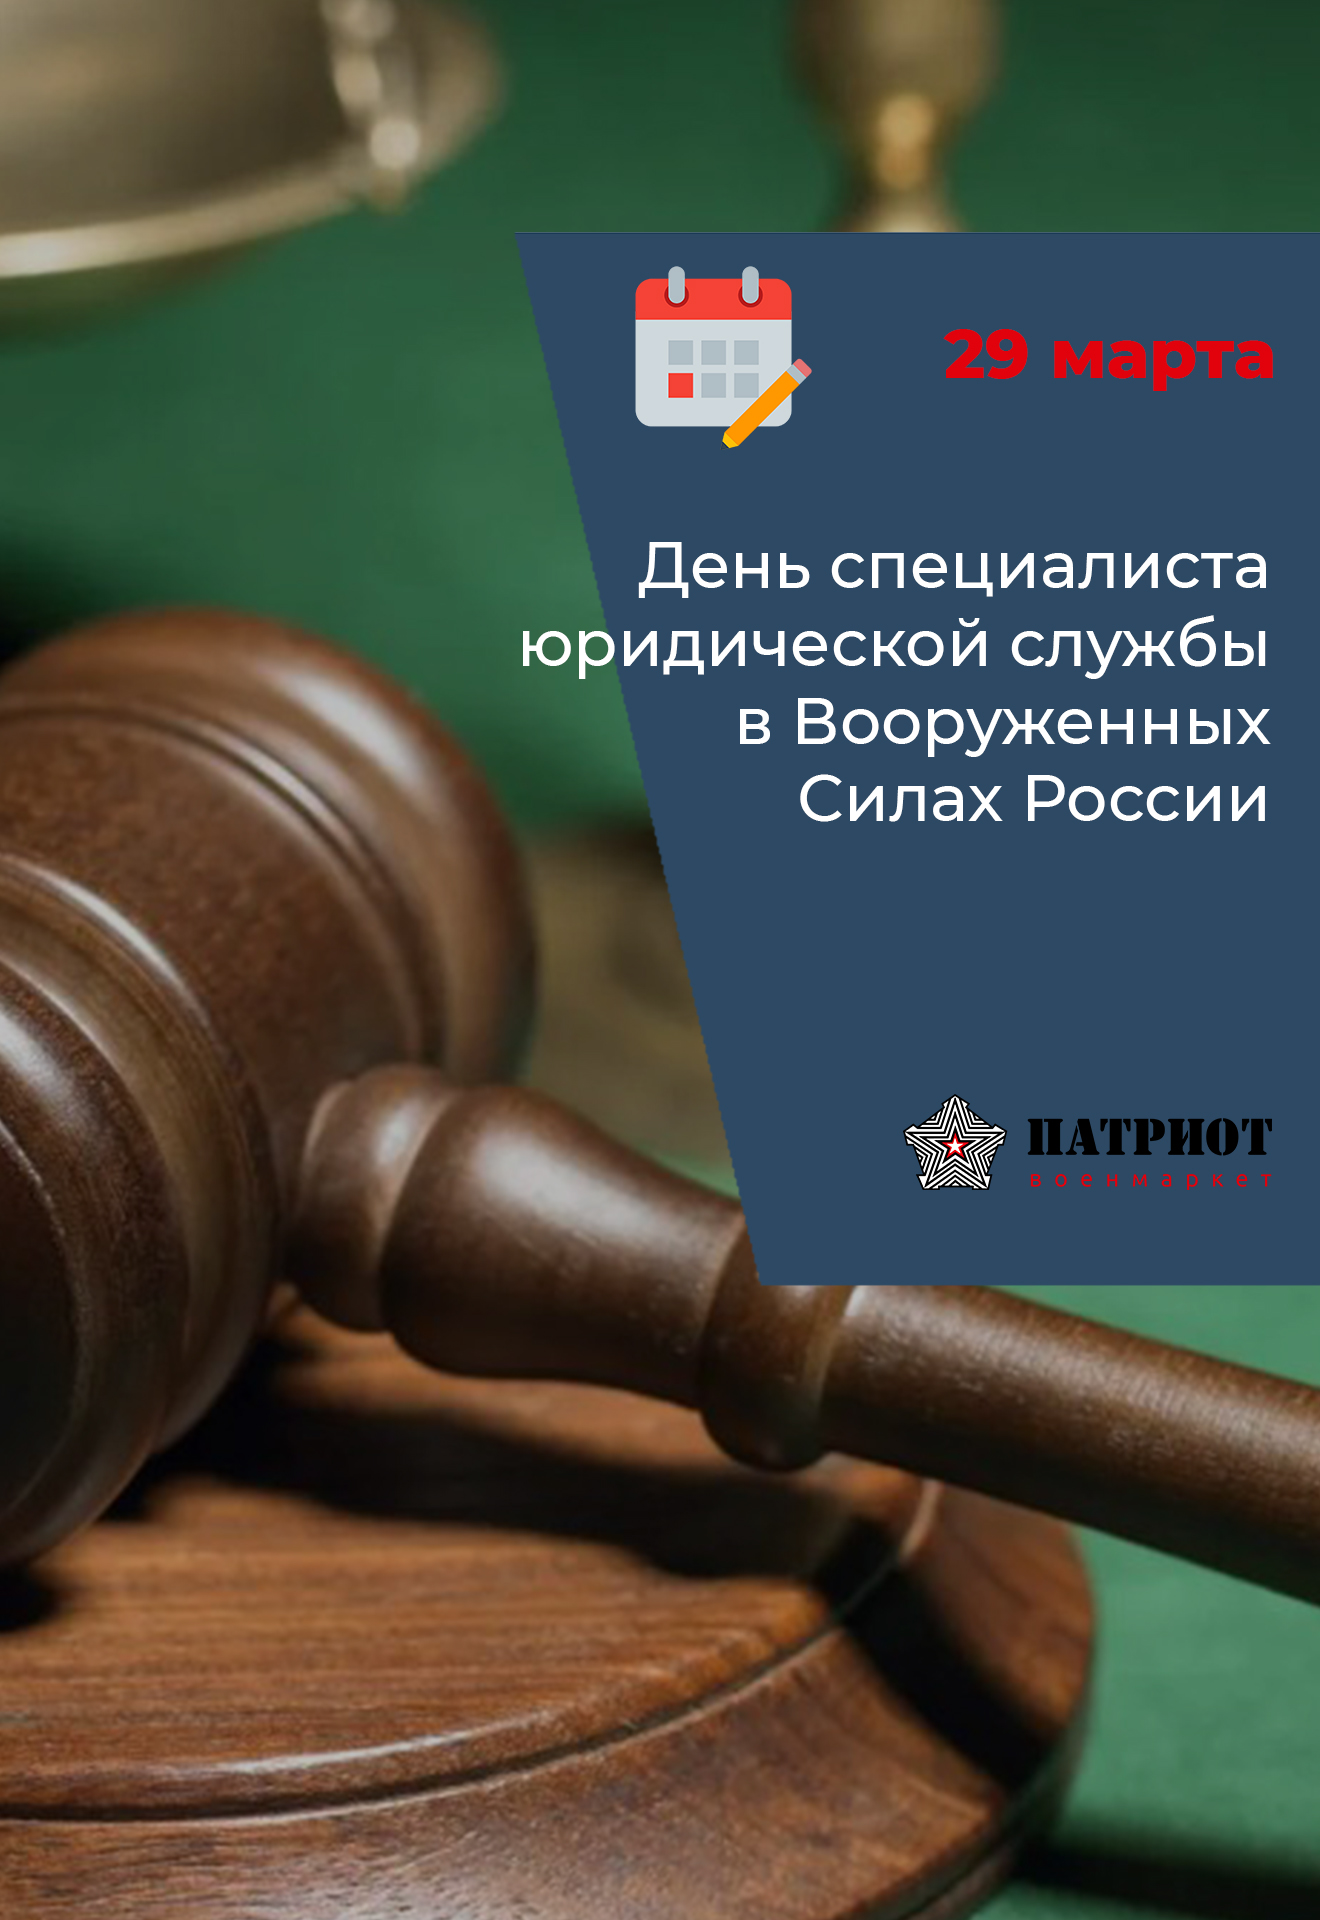 29 марта - День специалиста юридической службы в Вооруженных Силах России